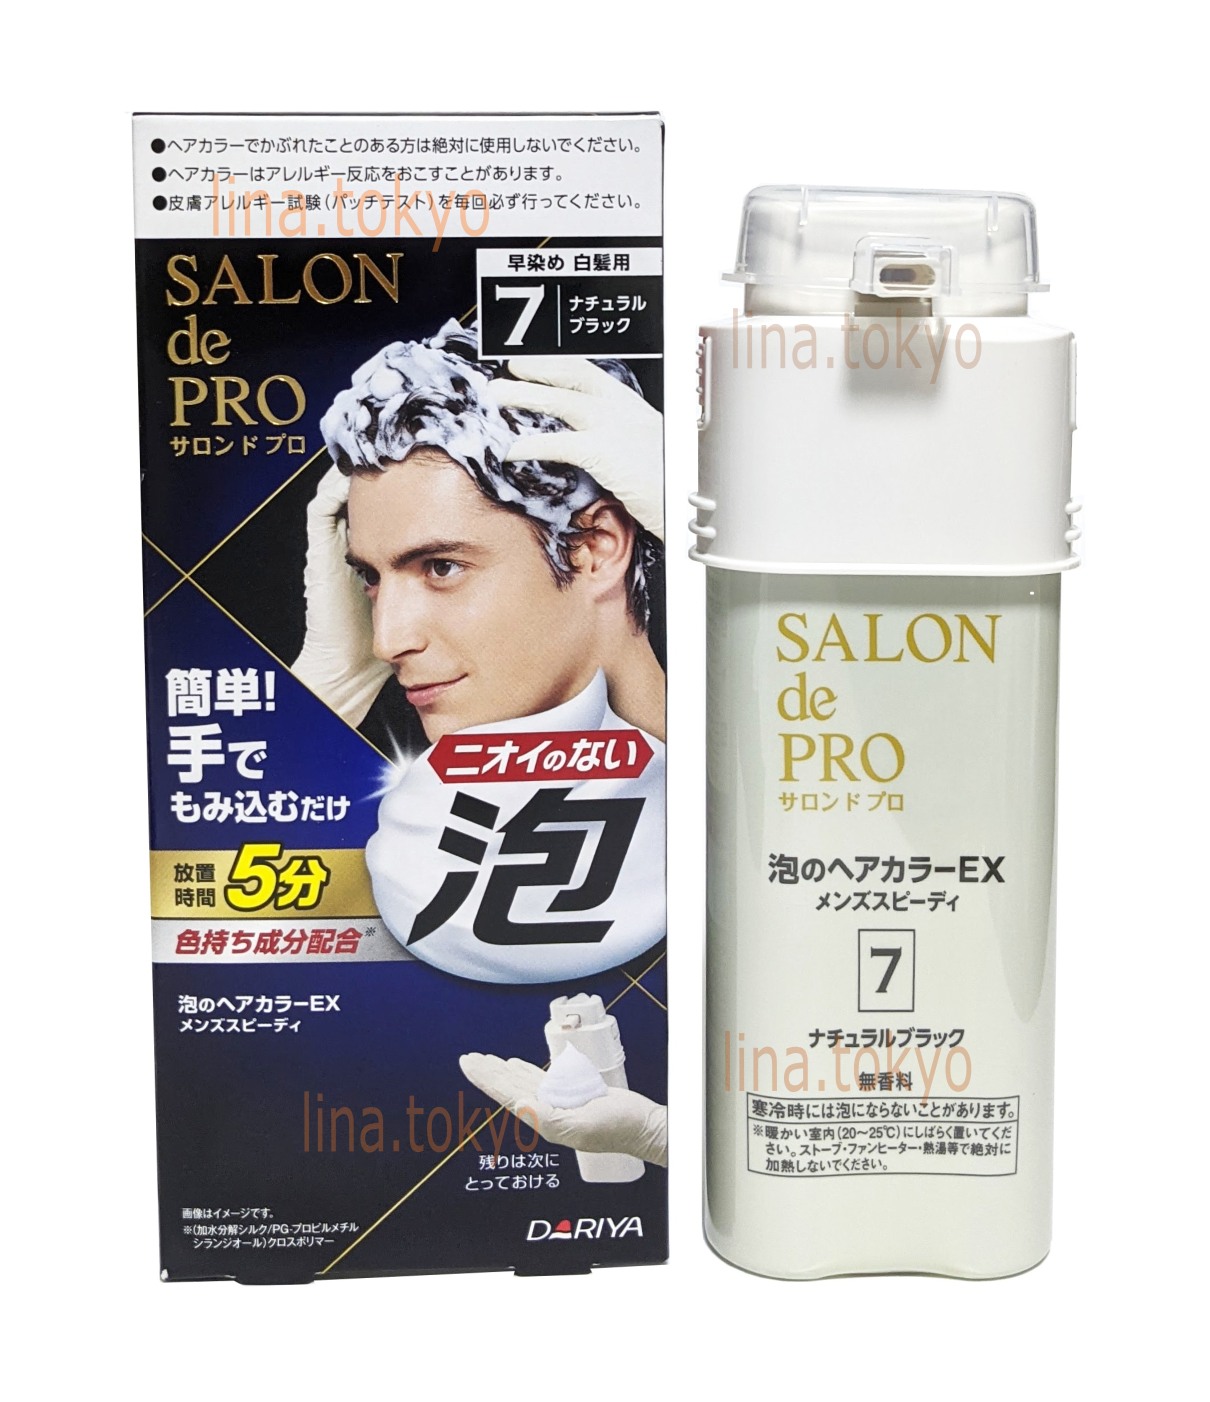 Thuốc nhuộm tóc cho Nam nhật bản Salon de Pro EX màu đen số 7, nhuộm tóc bạc, tóc thường, không Amoniac, không mùi, dưỡng tóc bóng mượt (T2013) (Miễn phí giao hàng)